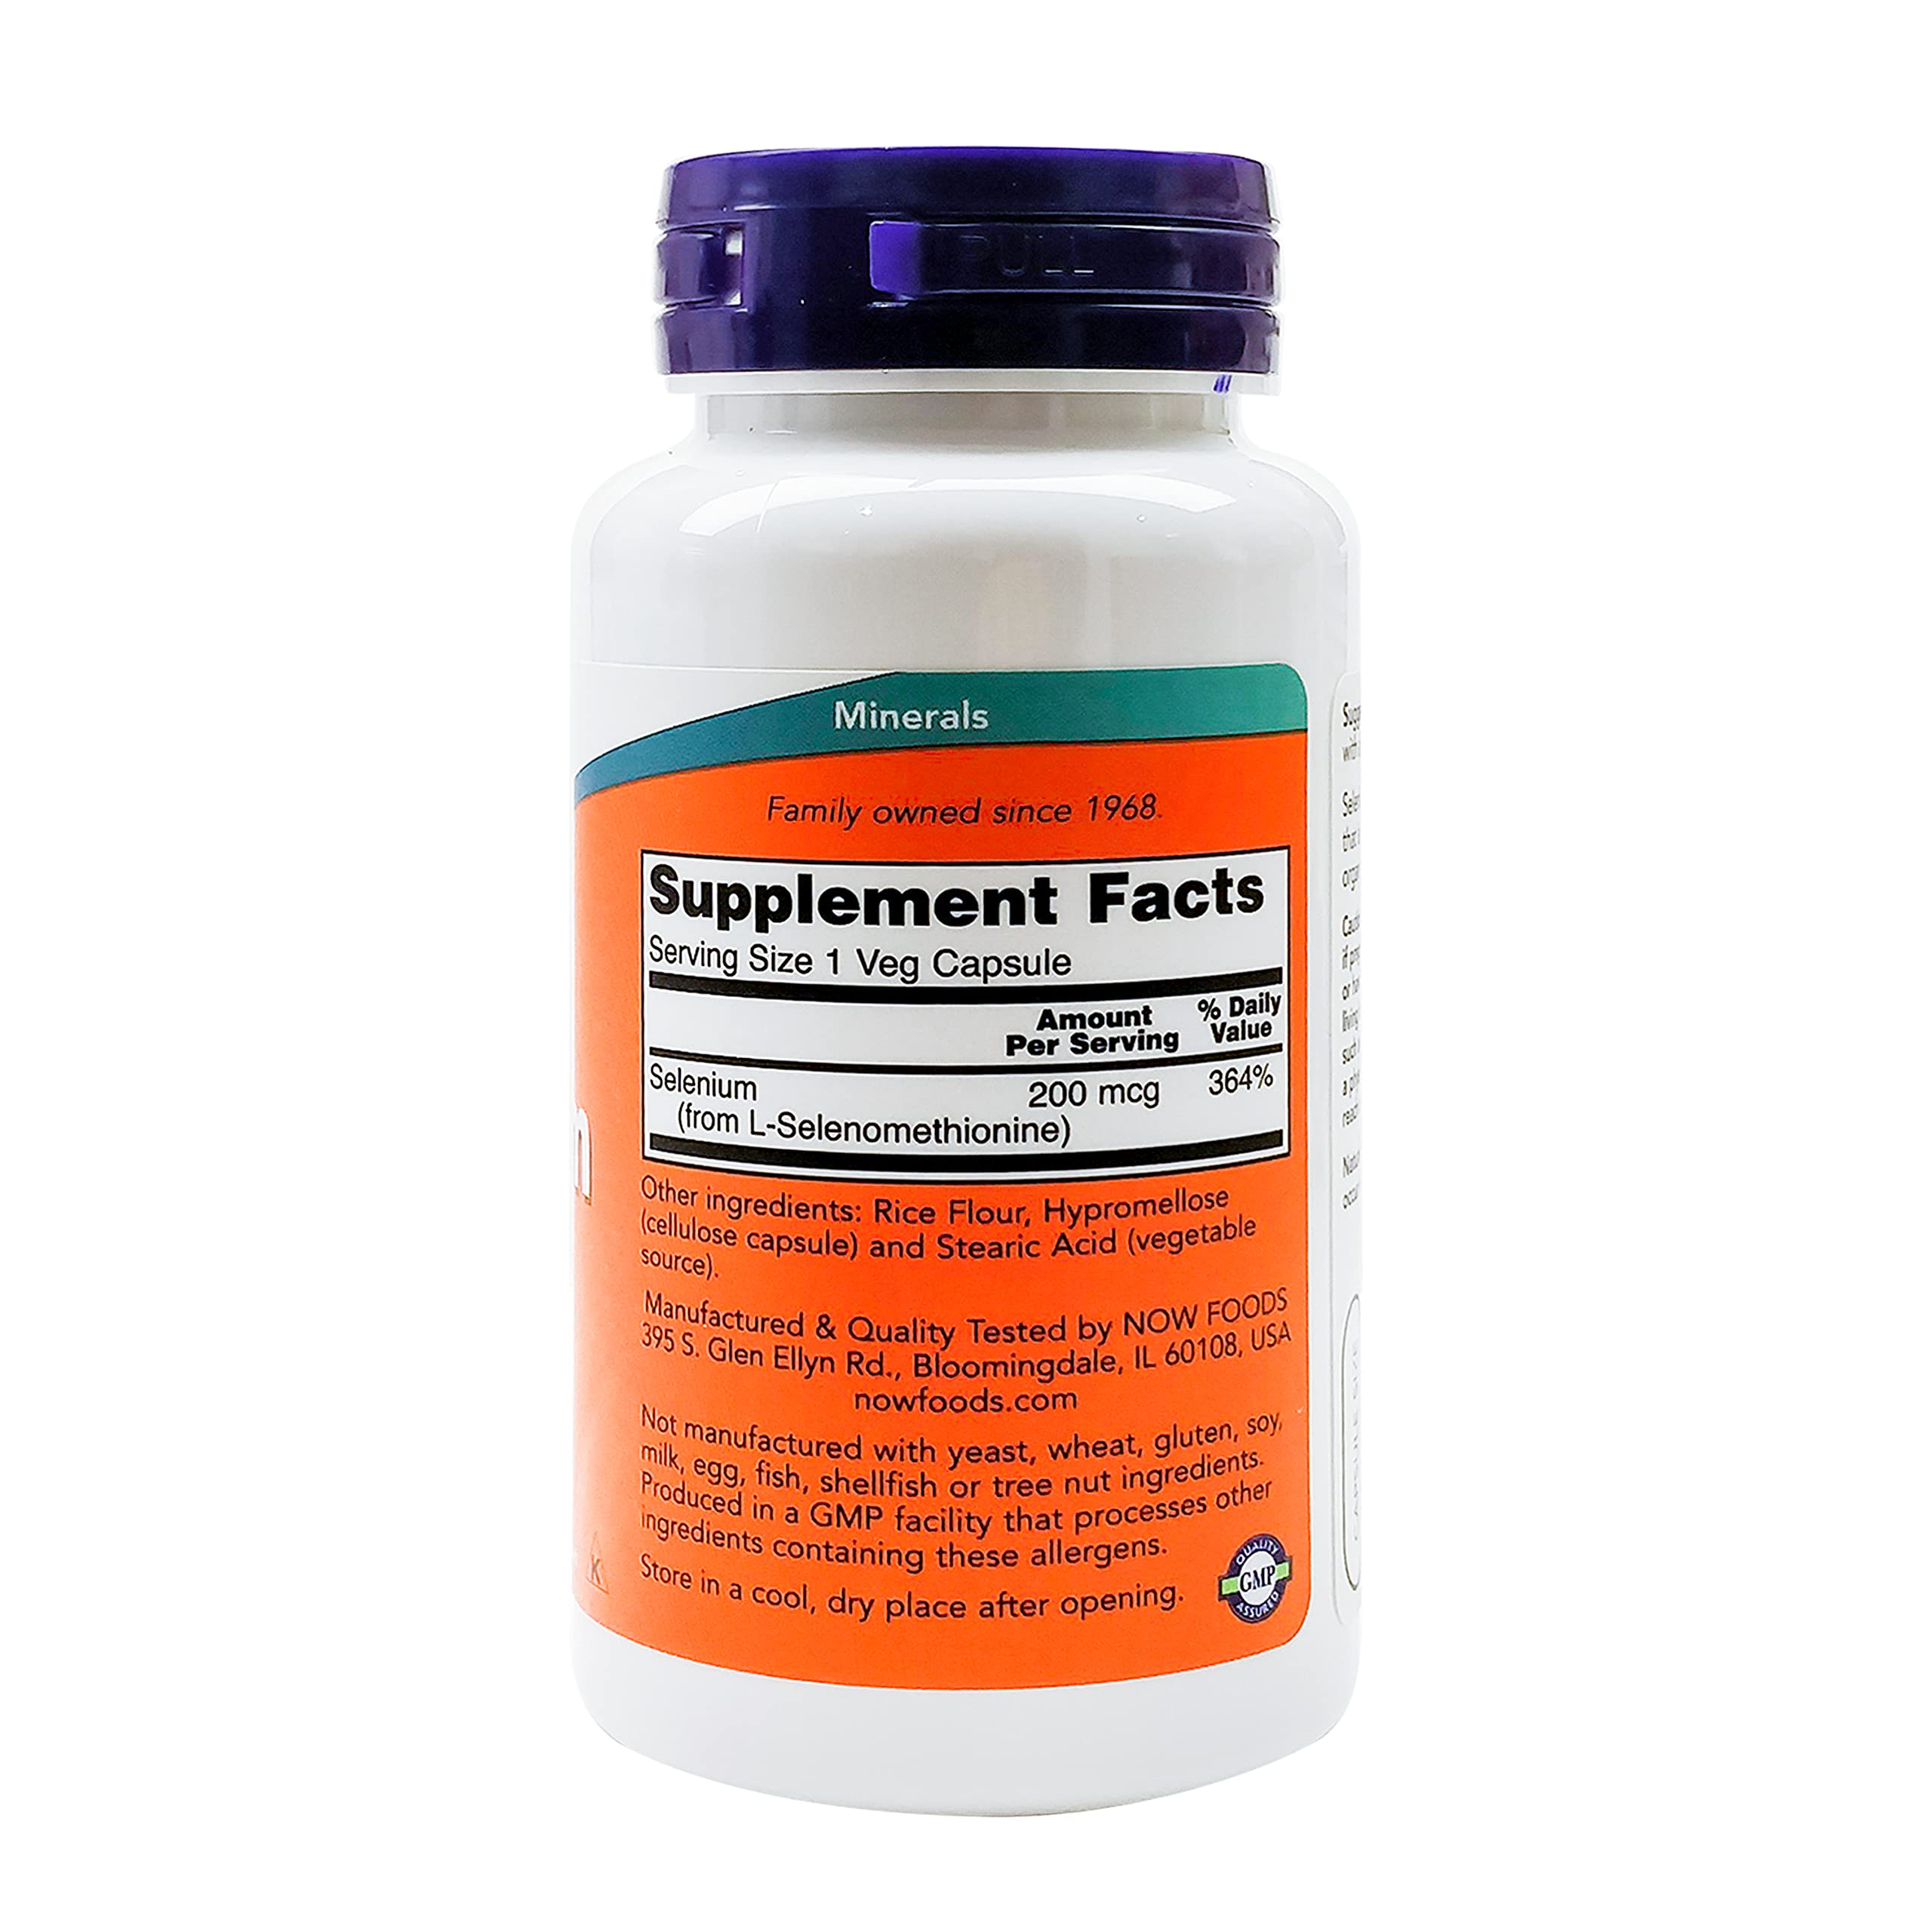 NOW Supplements, Selenium (L-Selenomethionine) 200 mcg, Essential Mineral*, 90 Veg Capsules (Pack of 2)